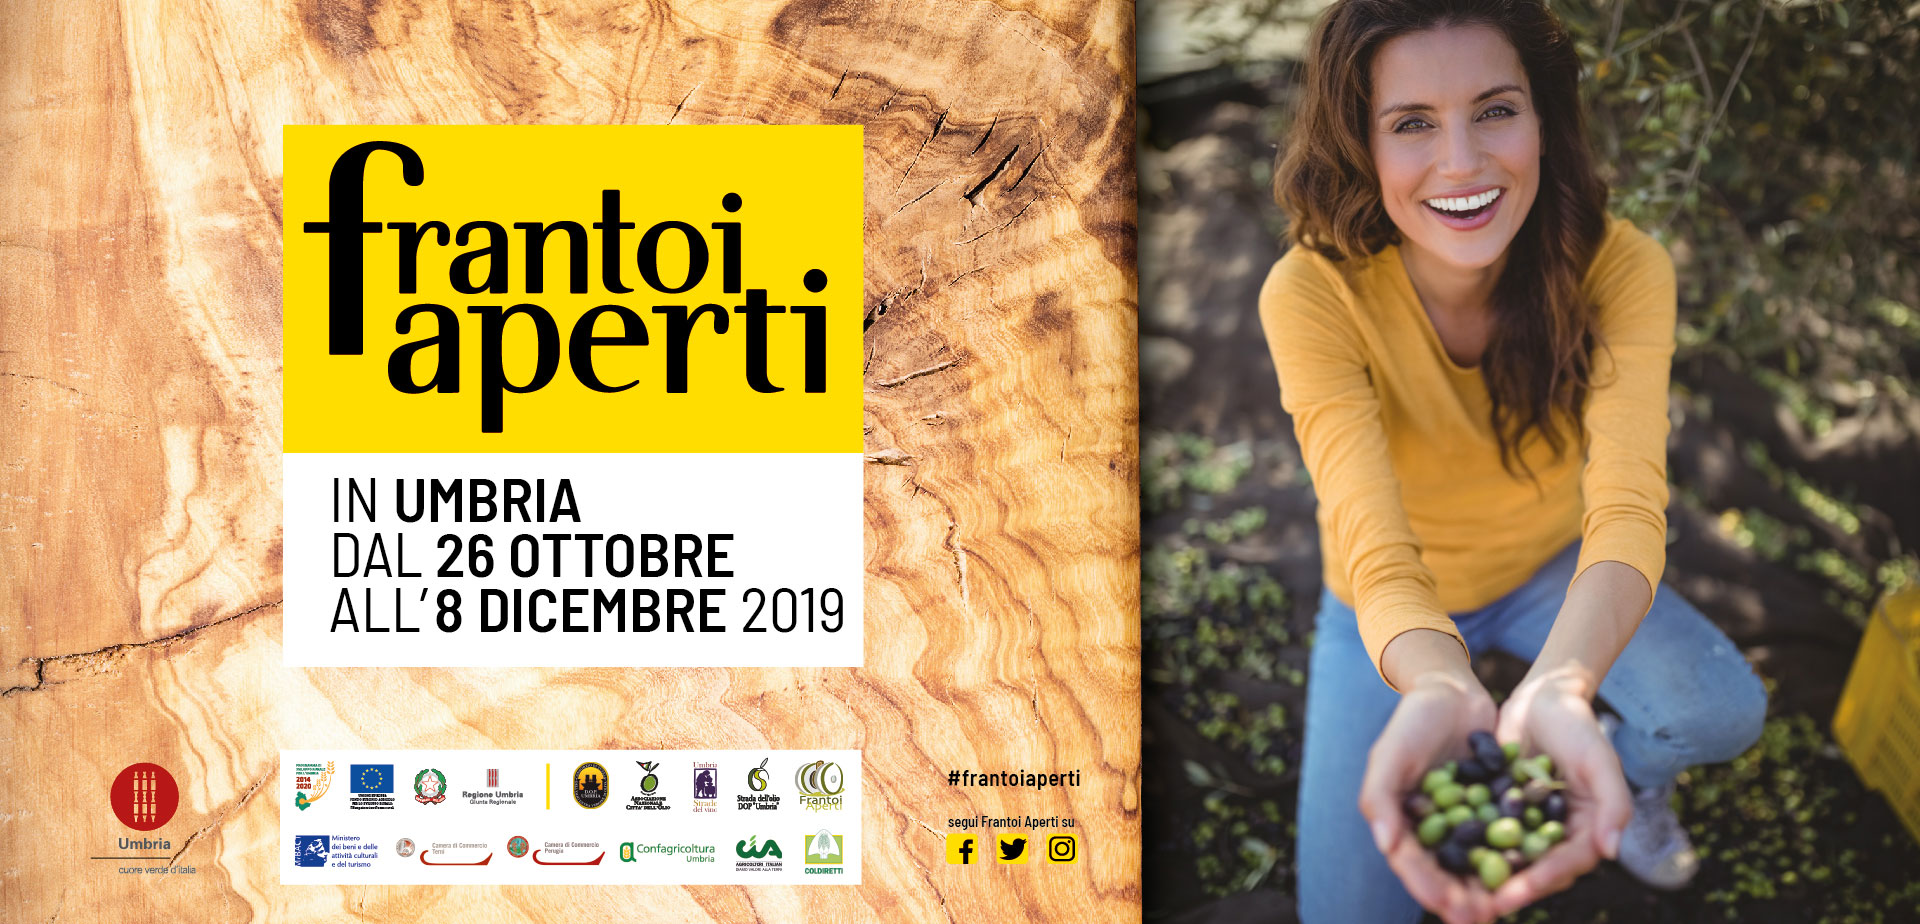 Frantoi Aperti in Umbria dal 26 Ottobre all'8 Dicembre 2019